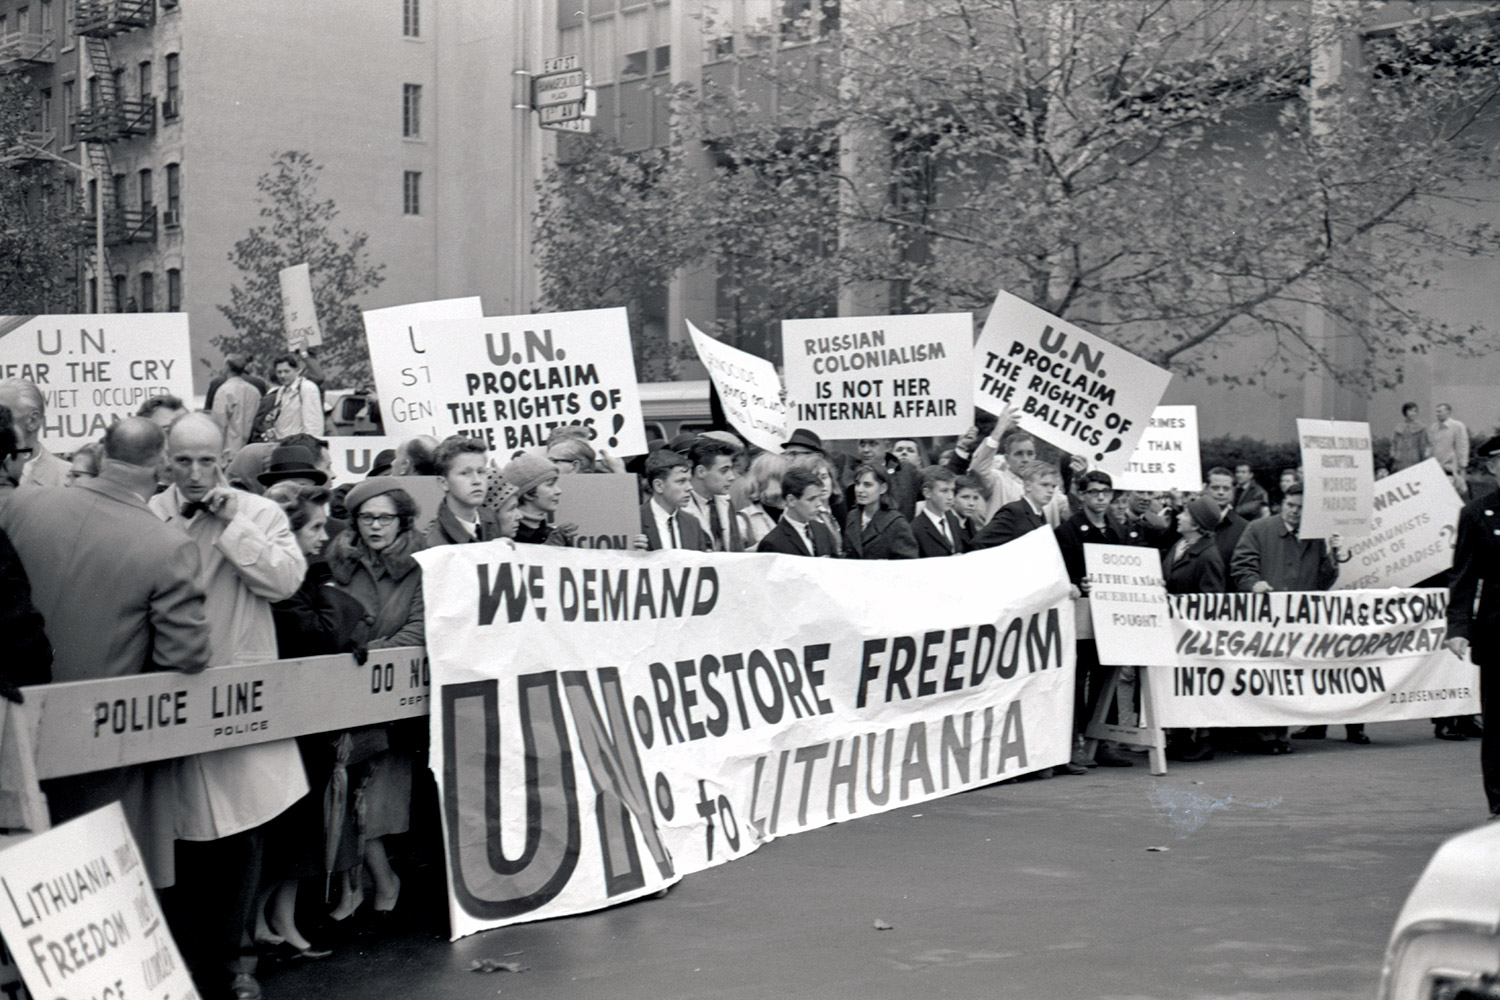 1965 m. Niujorkas, JAV. Baltijos šalių atstovų laisvės manifestas ir protestas prieš Sovietų Sąjungos veiksmus Lietuvoje, Latvijoje, Estijoje. LCVA, fotografijos autorius Jonas Garla